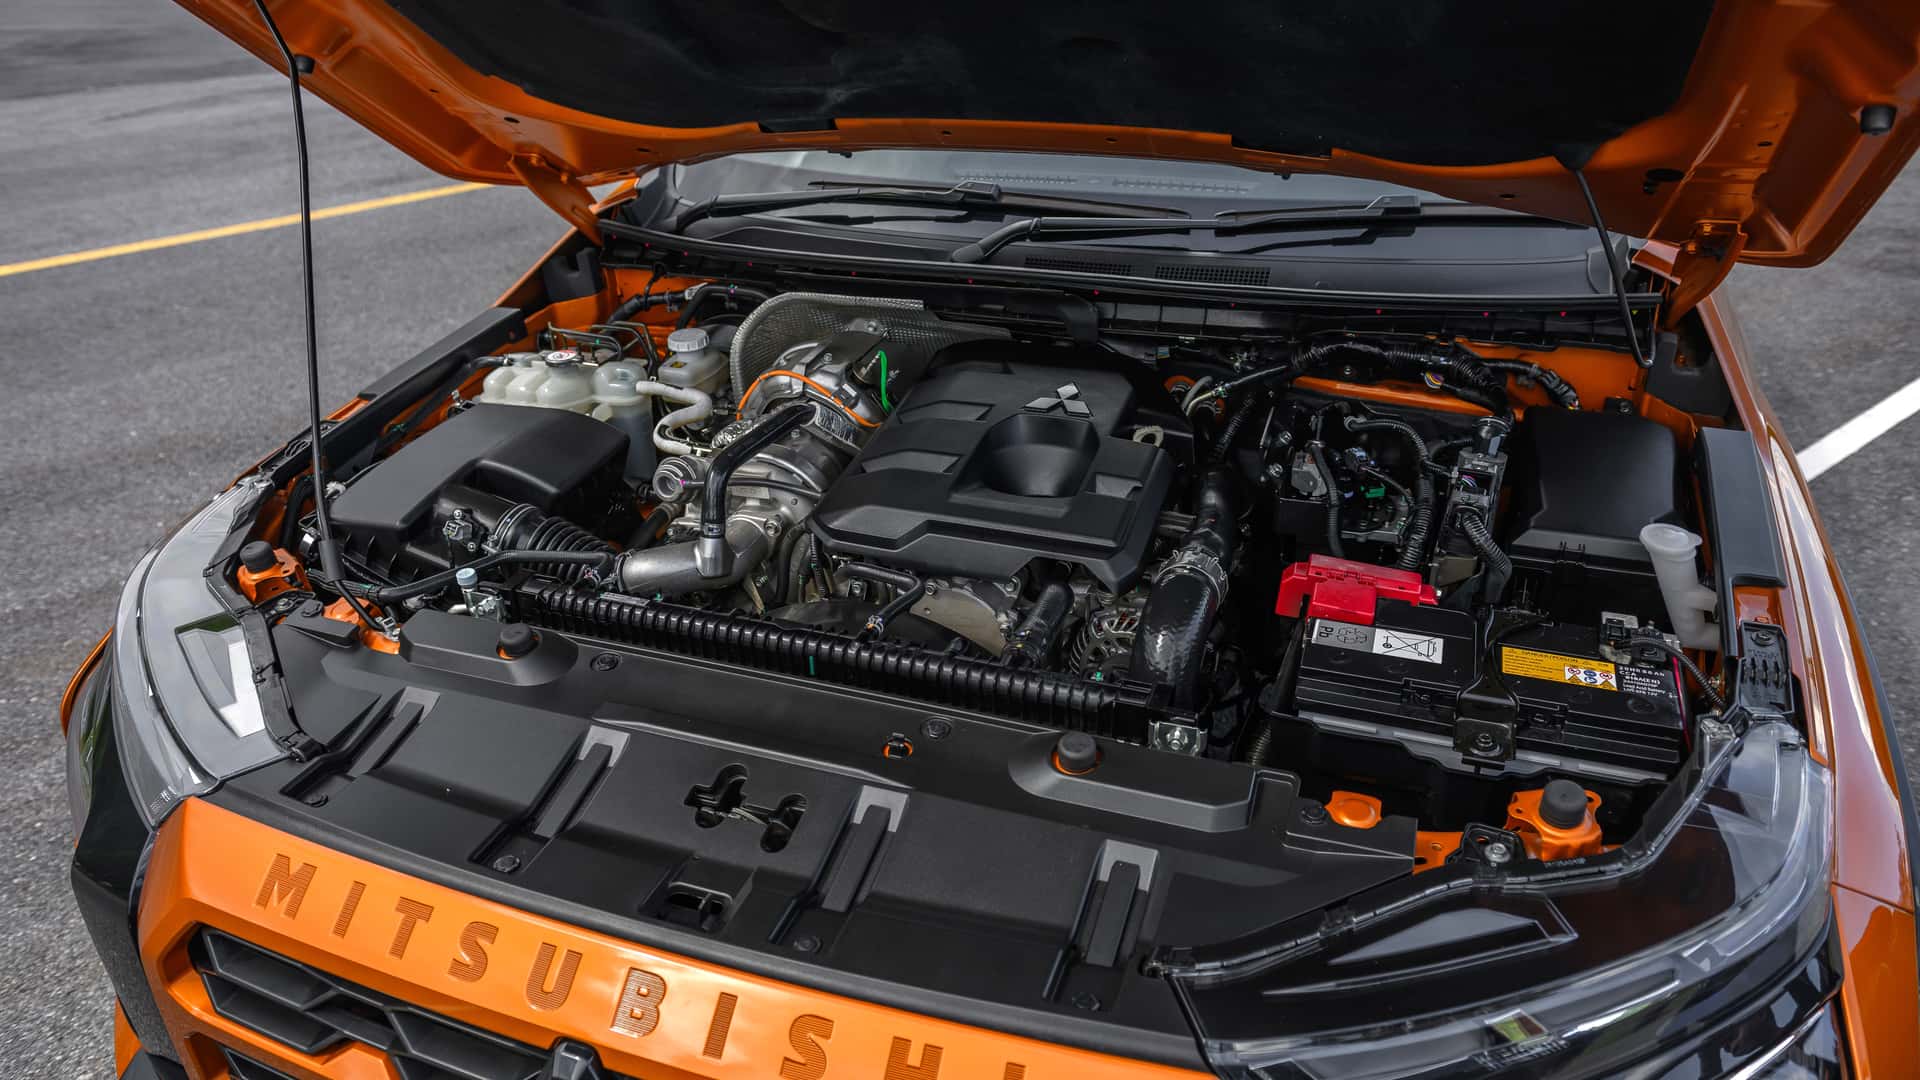 Yeni Mitsubishi L200 tanıtıldı: Daha güçlü motor, dayanıklı şasi